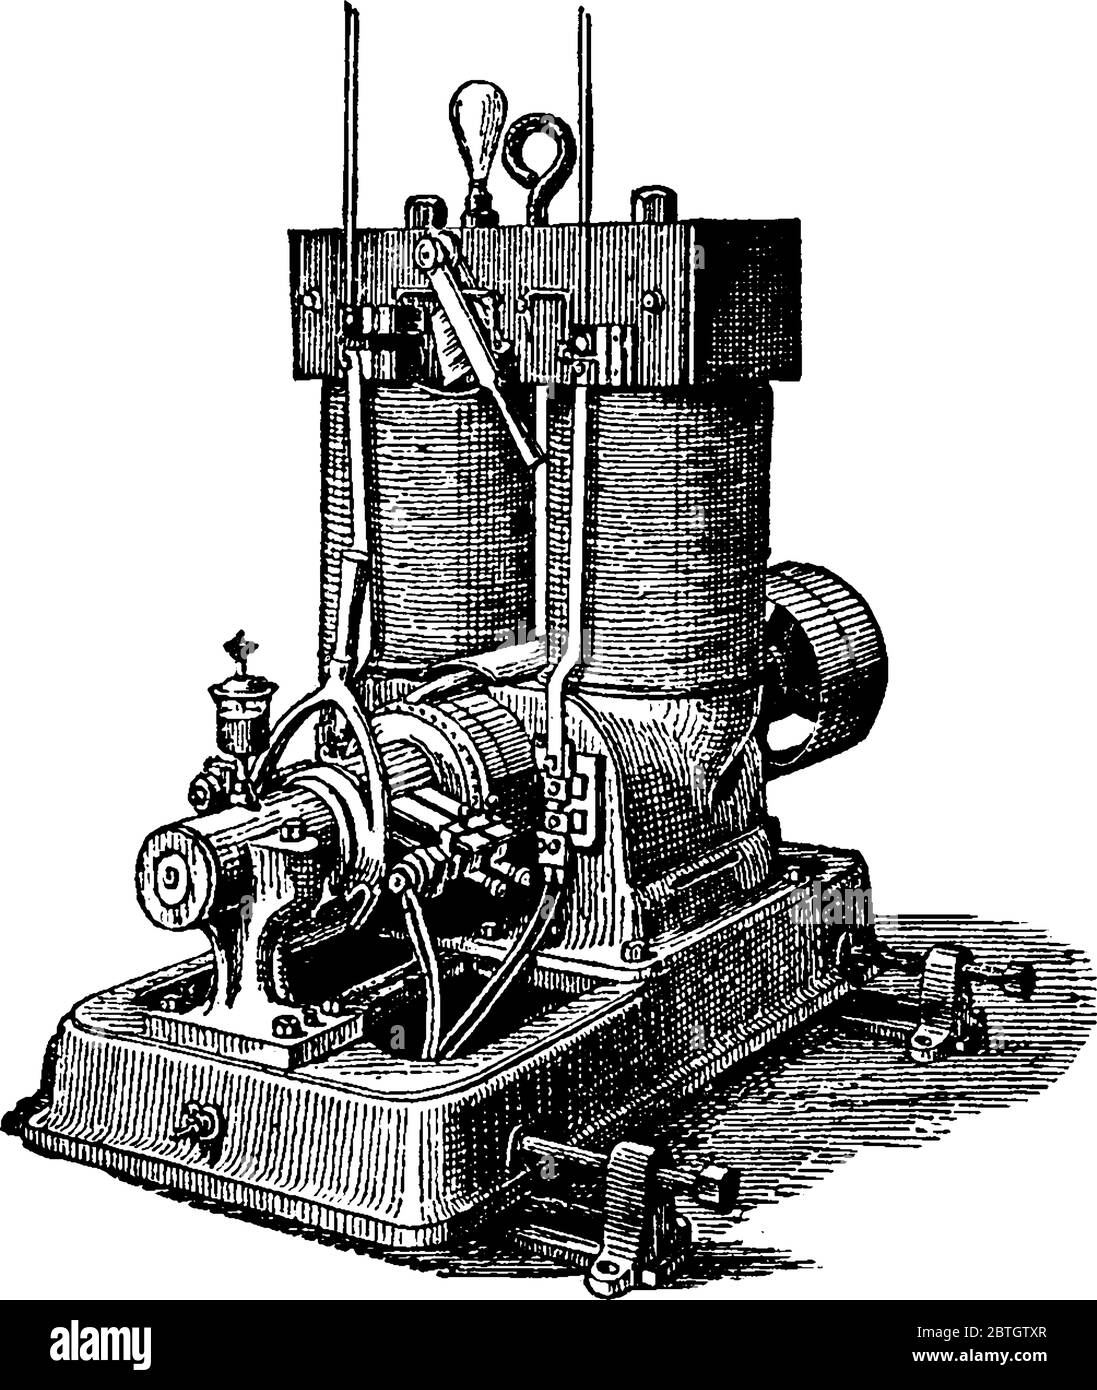 Thomas Edison ursprüngliche Konzept der elektrischen Maschine, ein Stromgenerator an Häuser, Unternehmen und Fabriken verteilt, Vintage-Linie drawi Stock Vektor